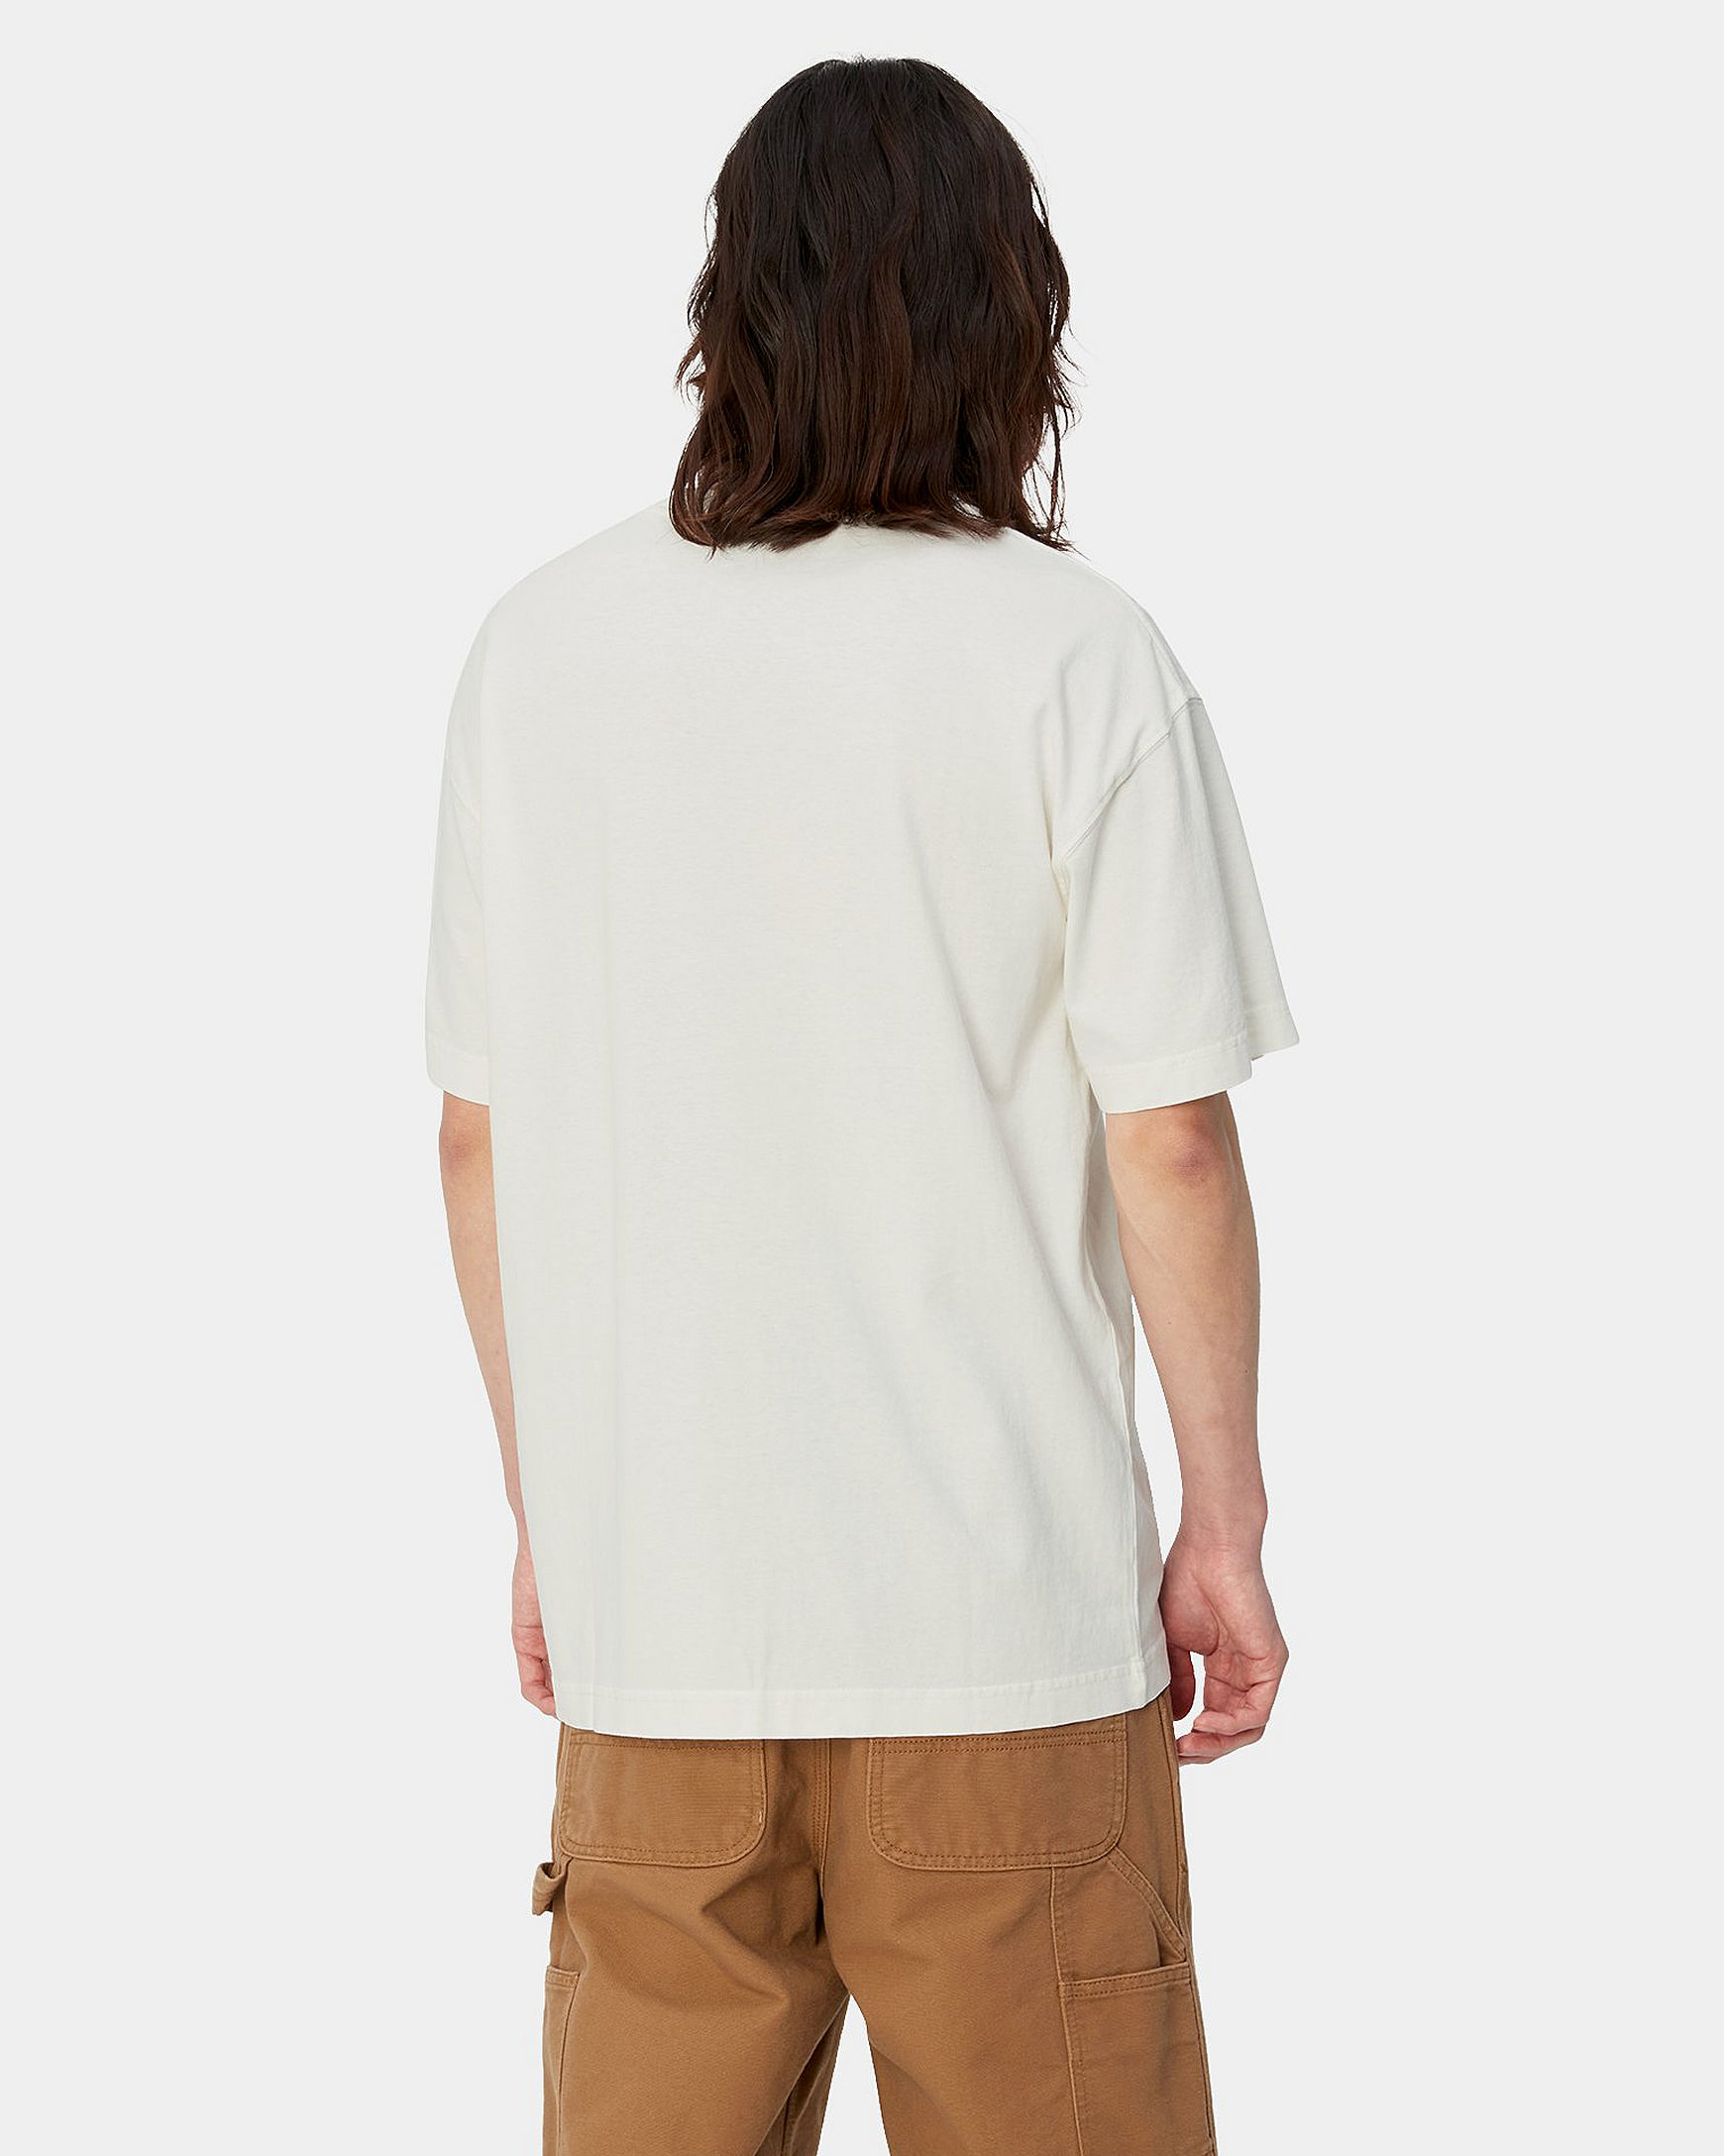 T-shirt Nelson - Wax Garment Dyed